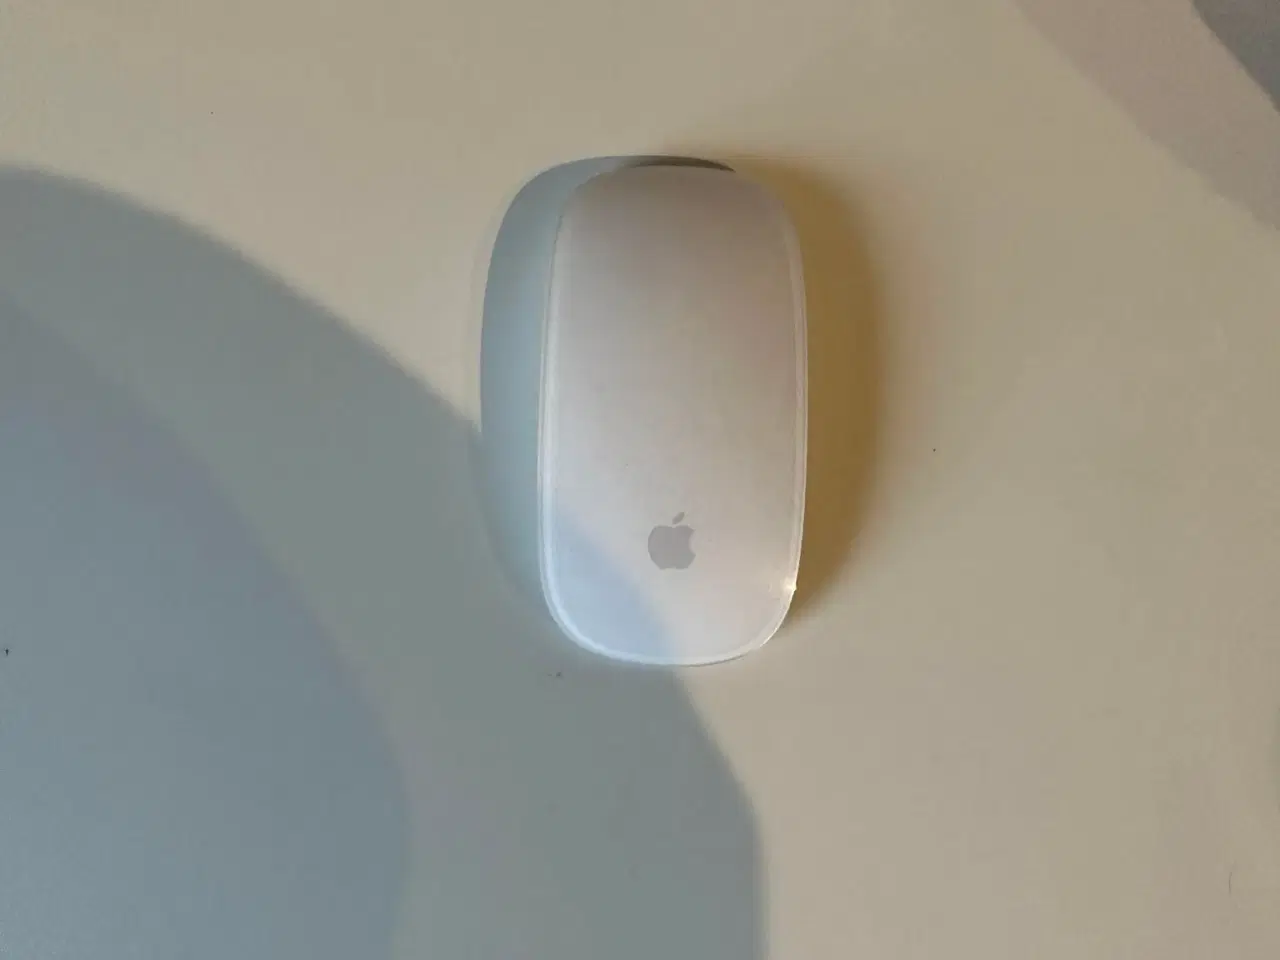 Billede 6 - iMac model MHK03DK/A fra 2020